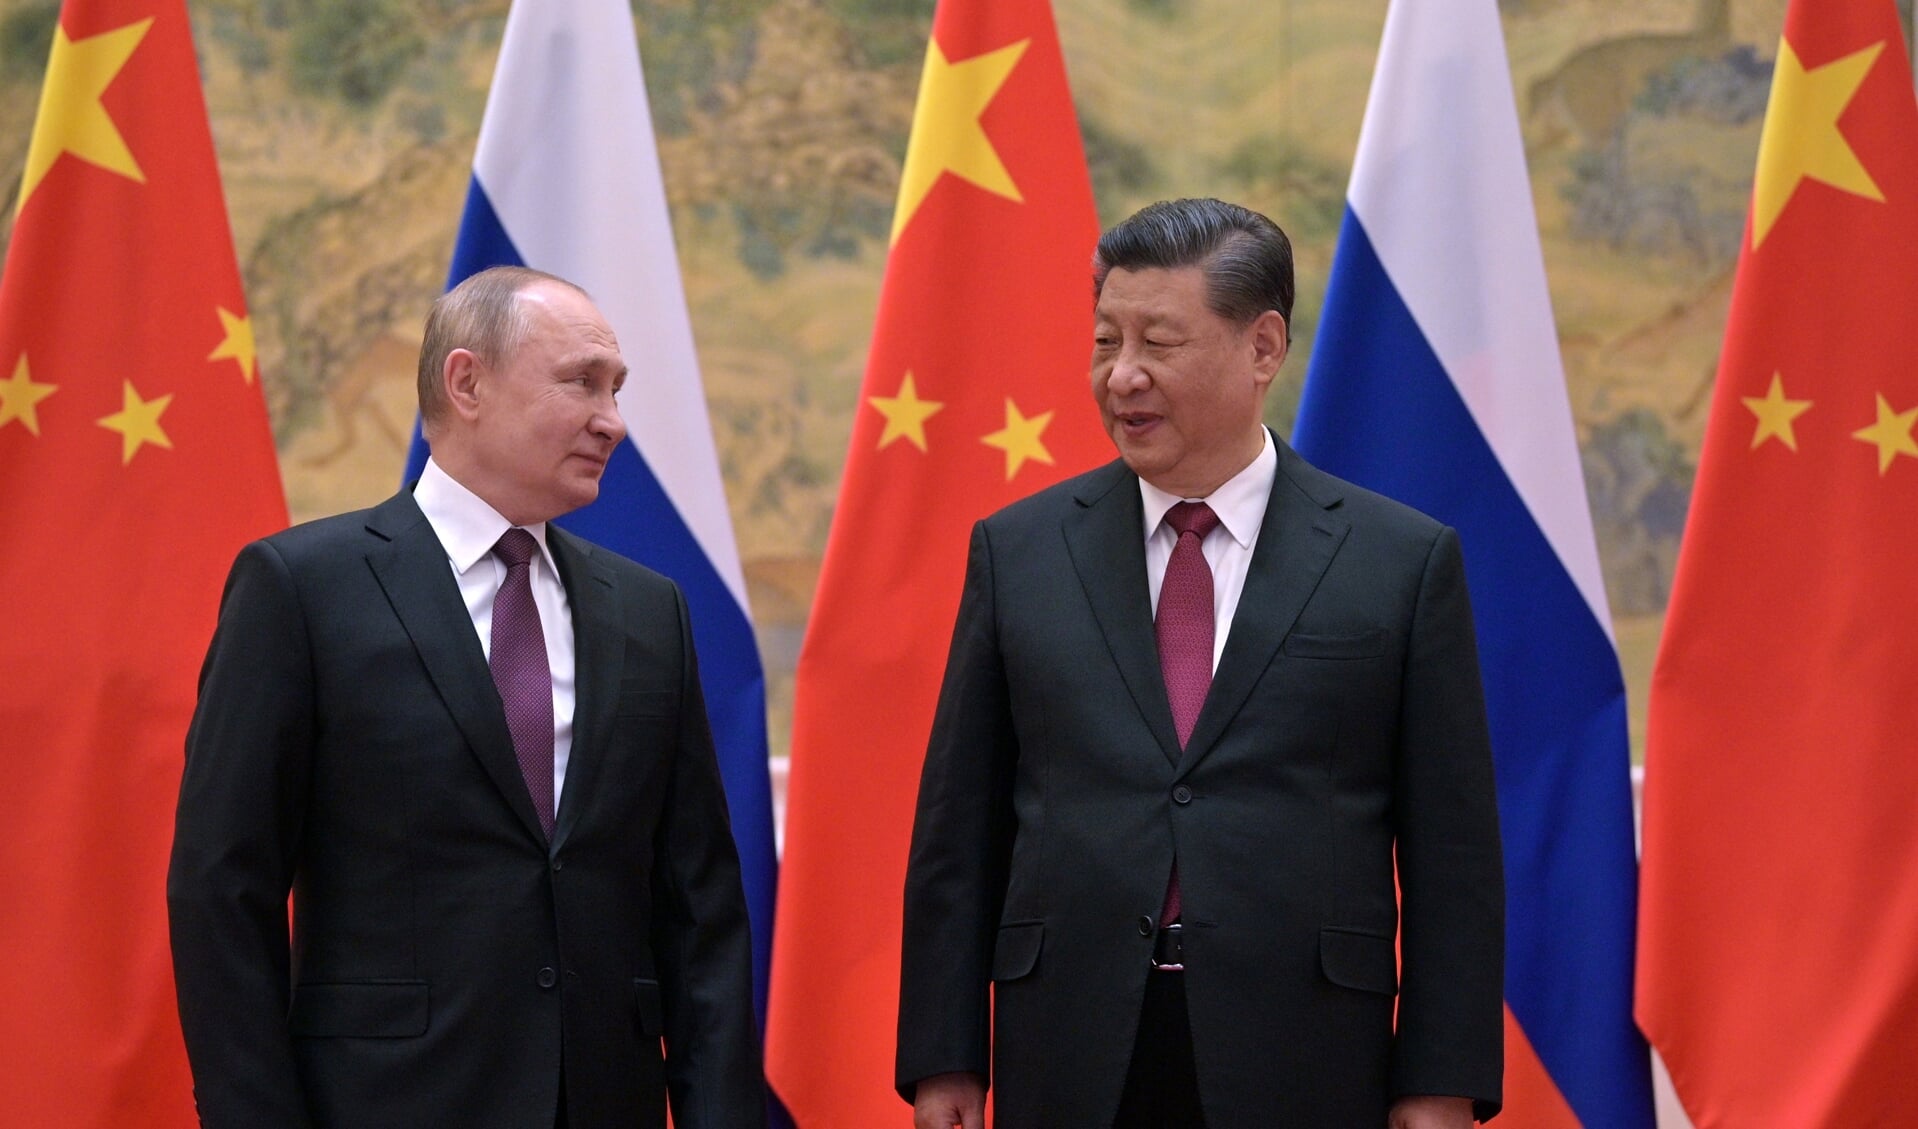 Op 4 februari spraken de Russische president Vladimir Poetin en zijn Chinese collega Xi Jinping elkaar in Beijing voorafgaand aan de opening van de Olympische Winterspelen.